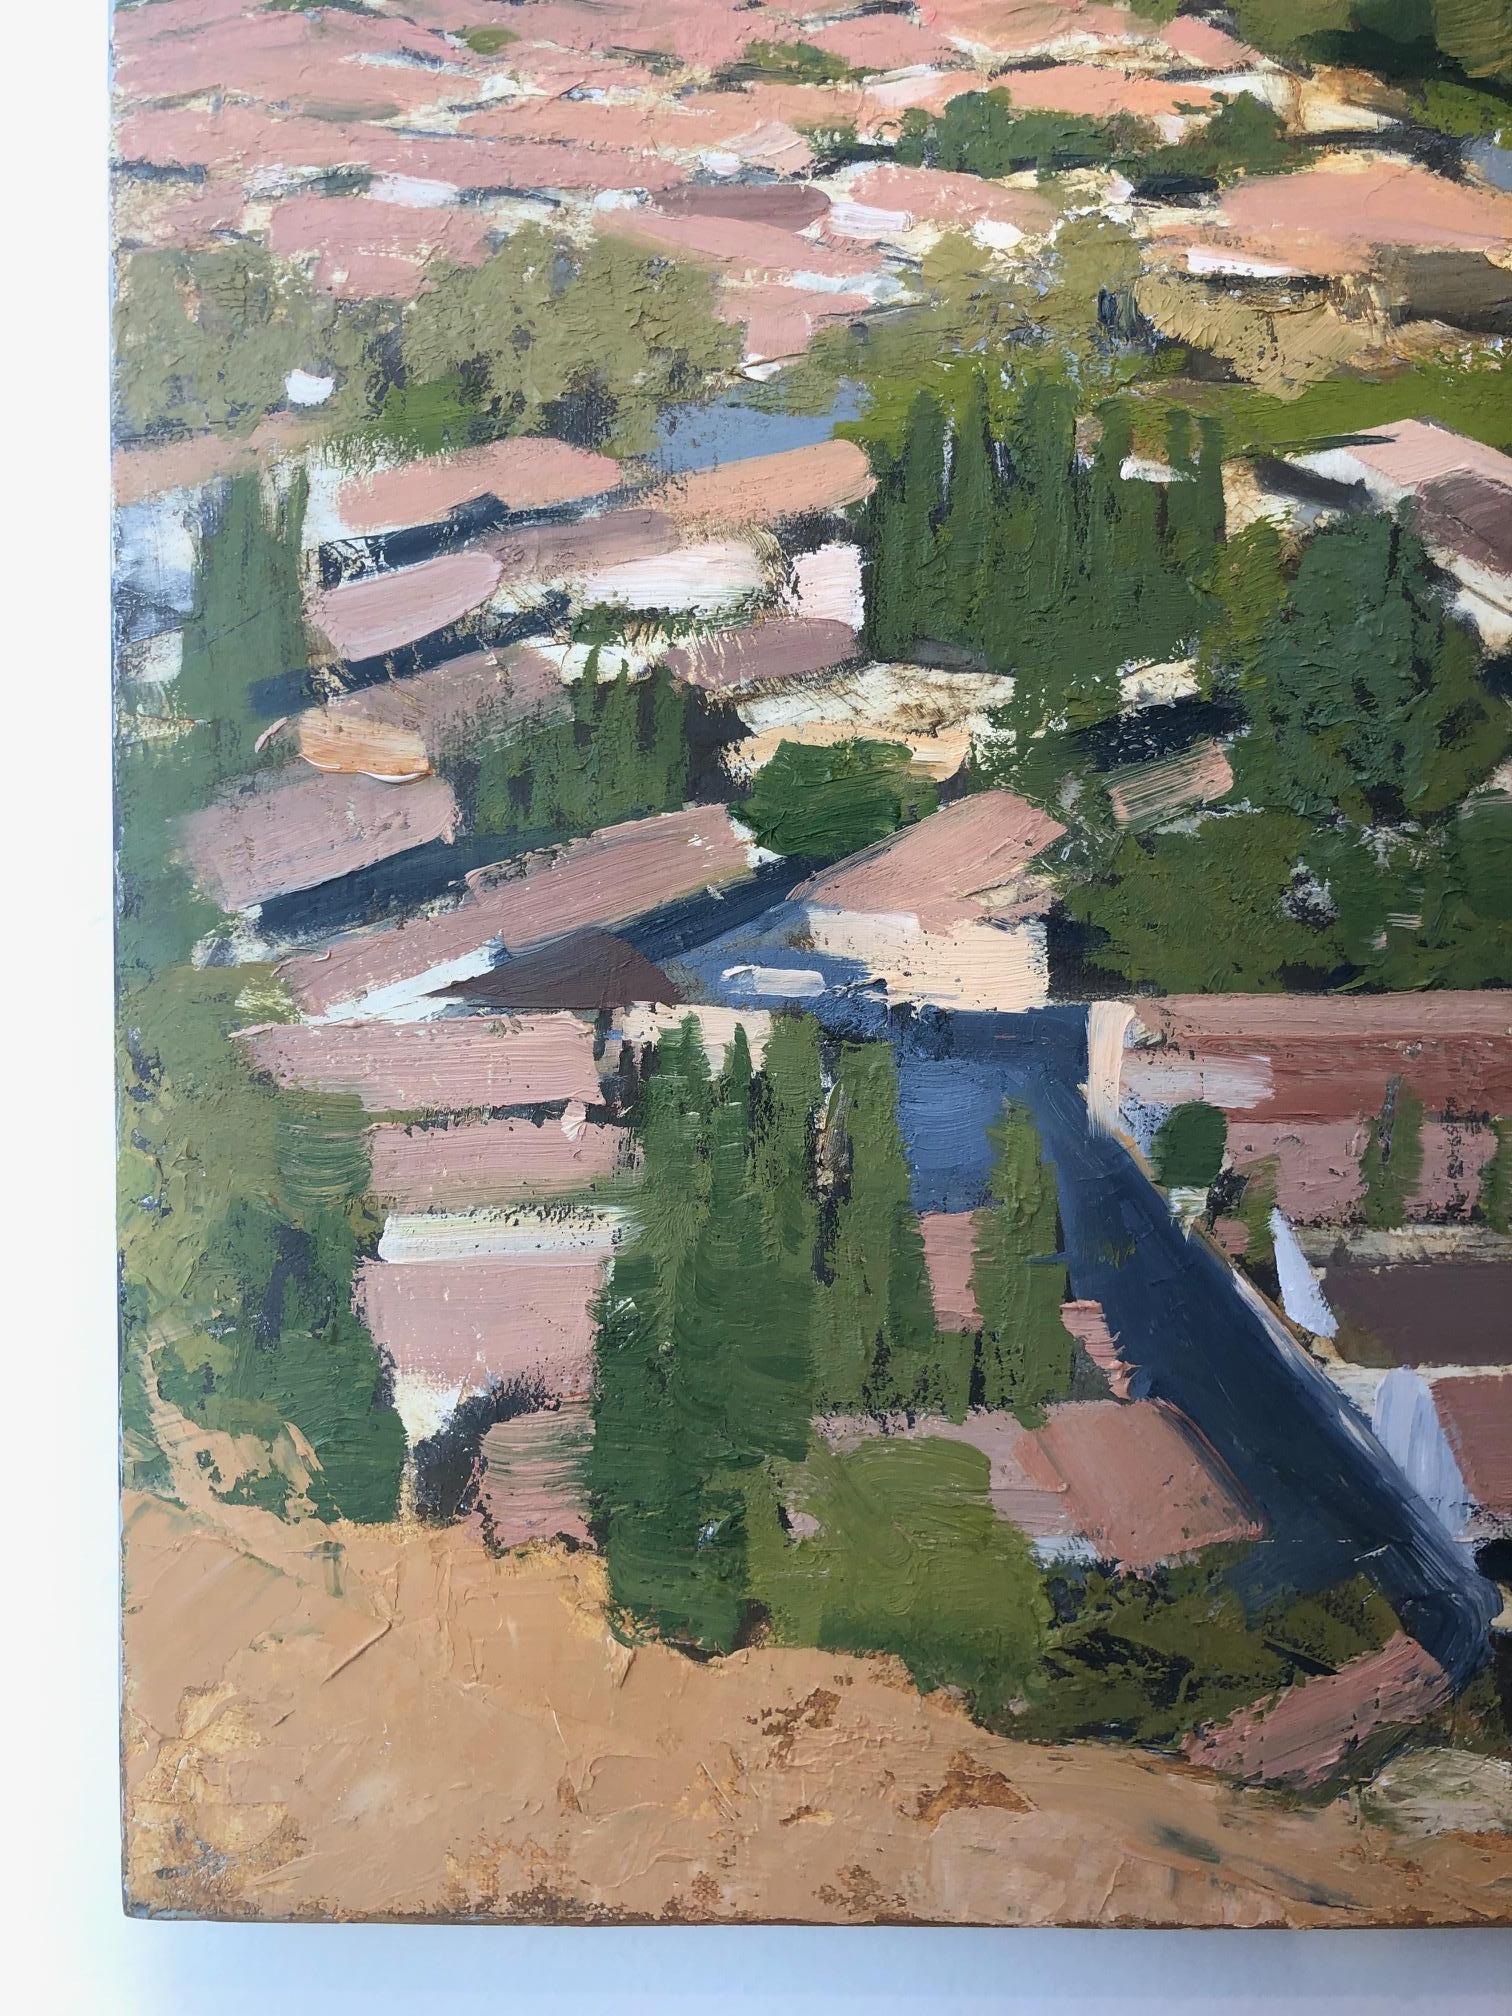 Sprawl n° 10 / architecture, peinture à l'huile abstraite de ville, réalisme urbain  - Painting de Ryan Reynolds